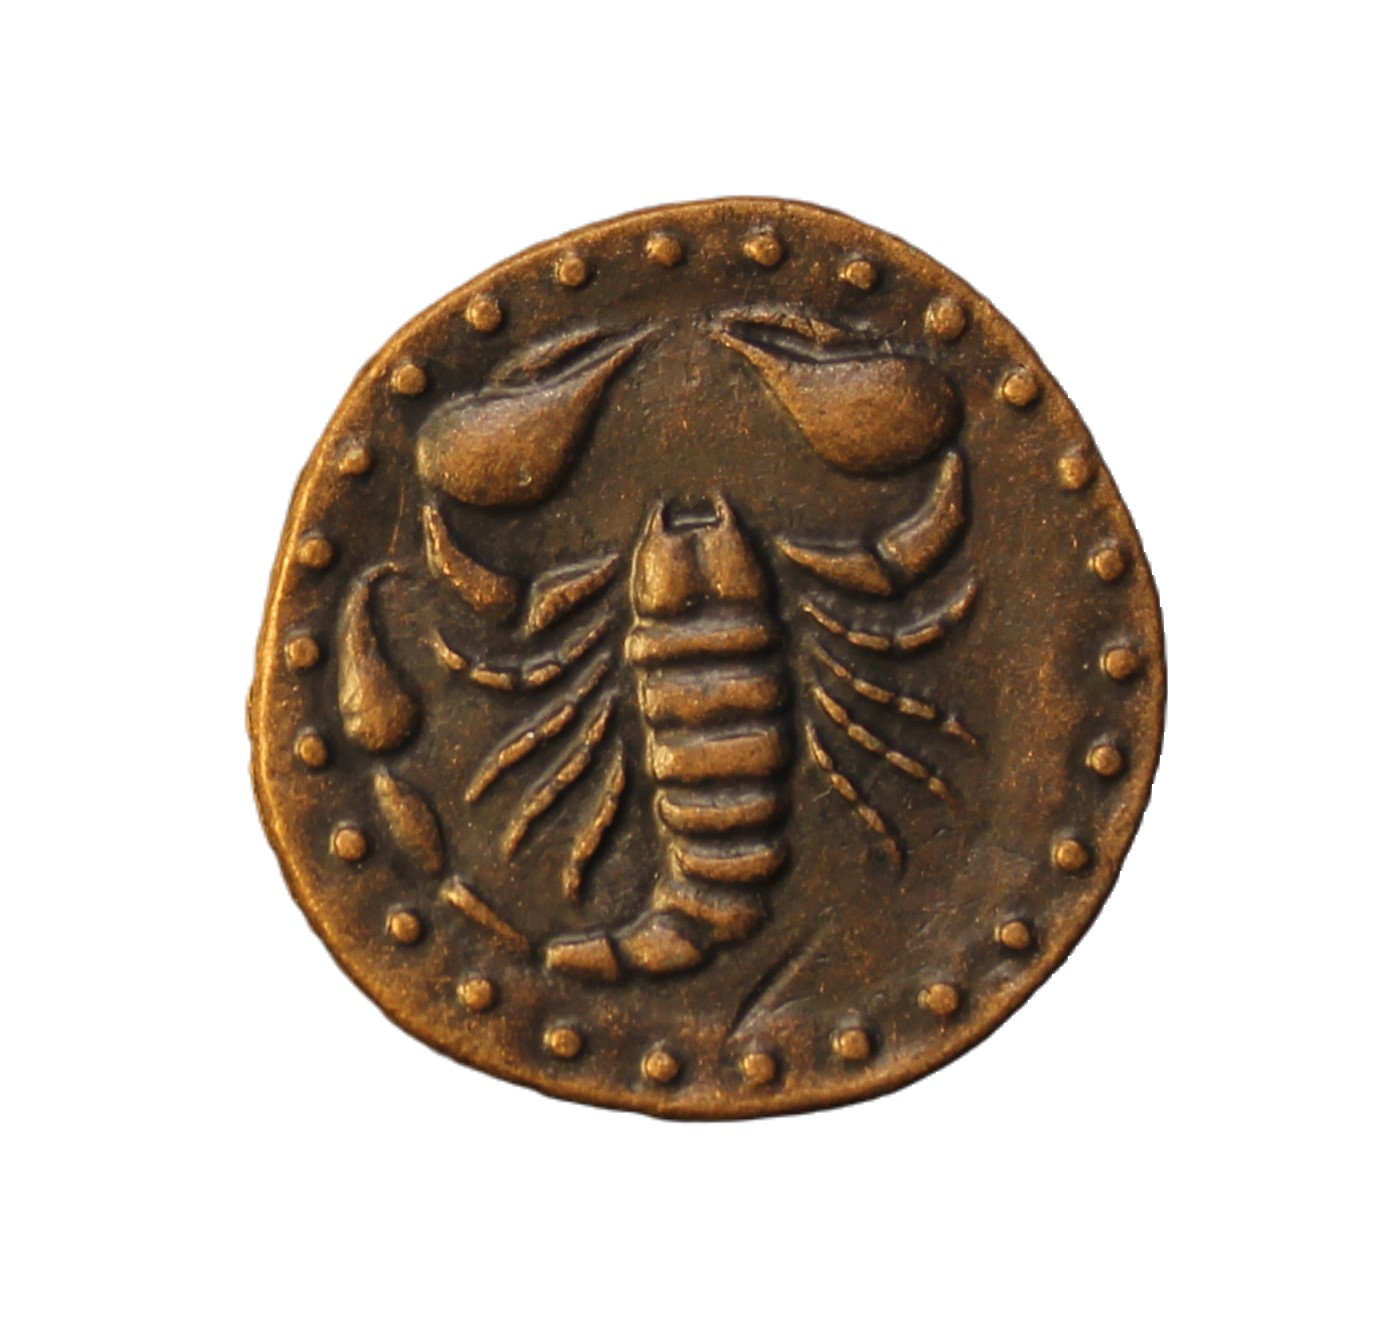 Сувенирная монета 1toy Золото магнитного моря Скорпион